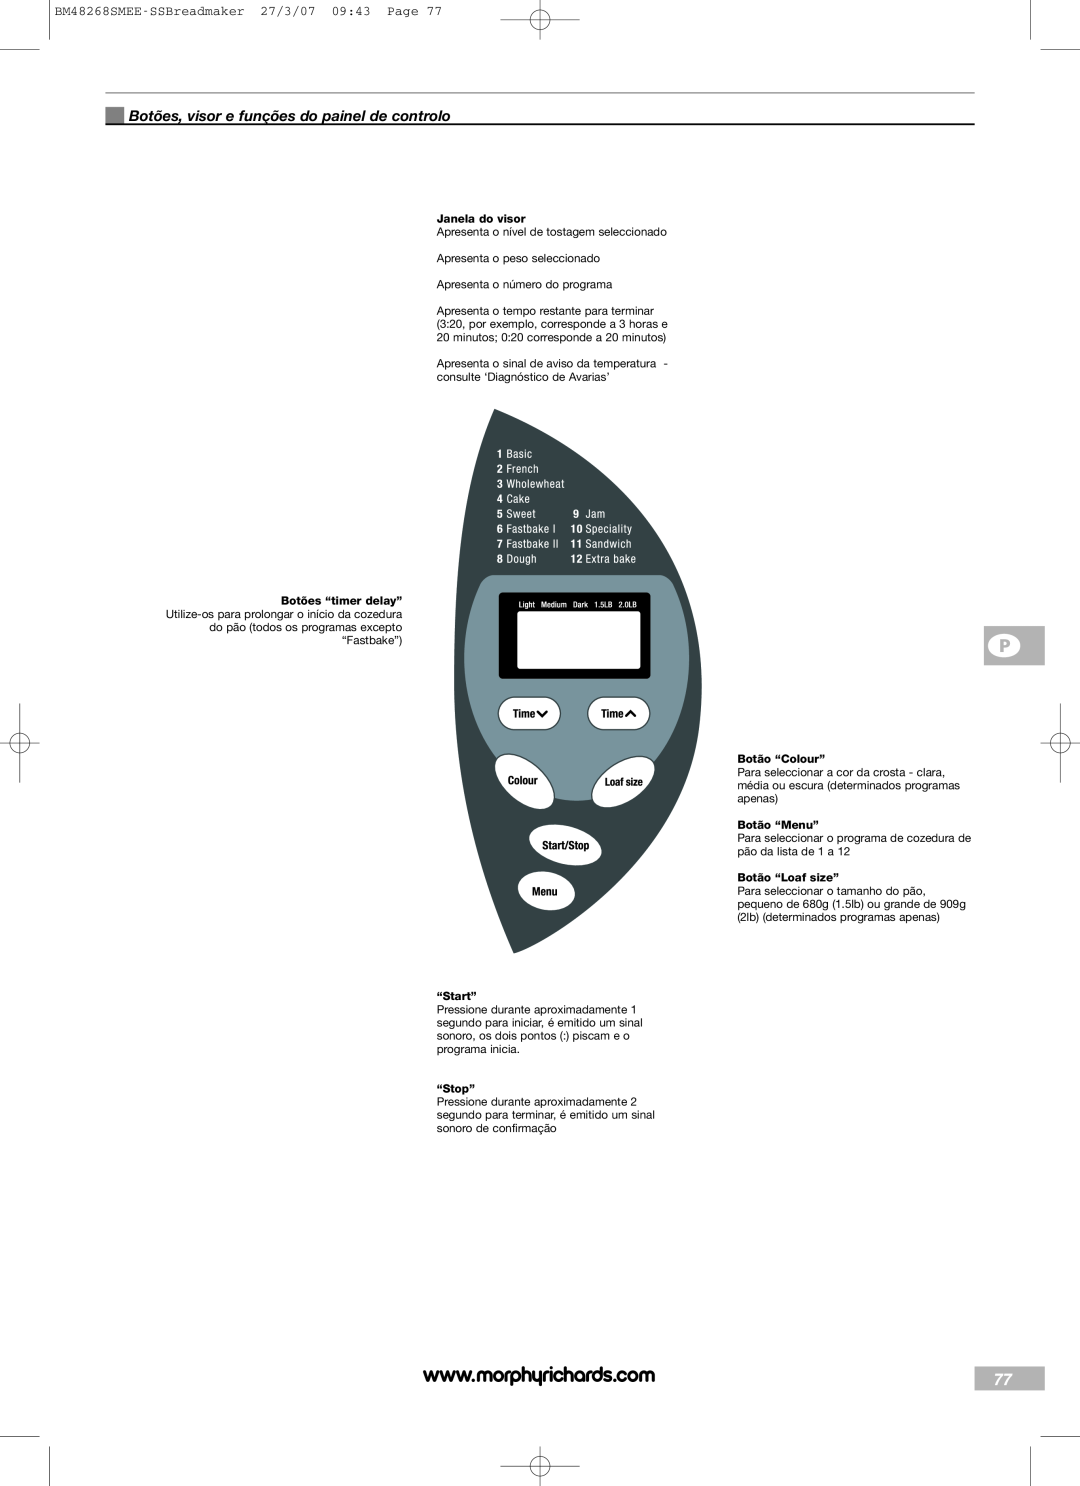 Morphy Richards Botões, visor e funções do painel de controlo, BM48268SMEE-SSBreadmaker27/3/07 09:43 Page, “Start” 